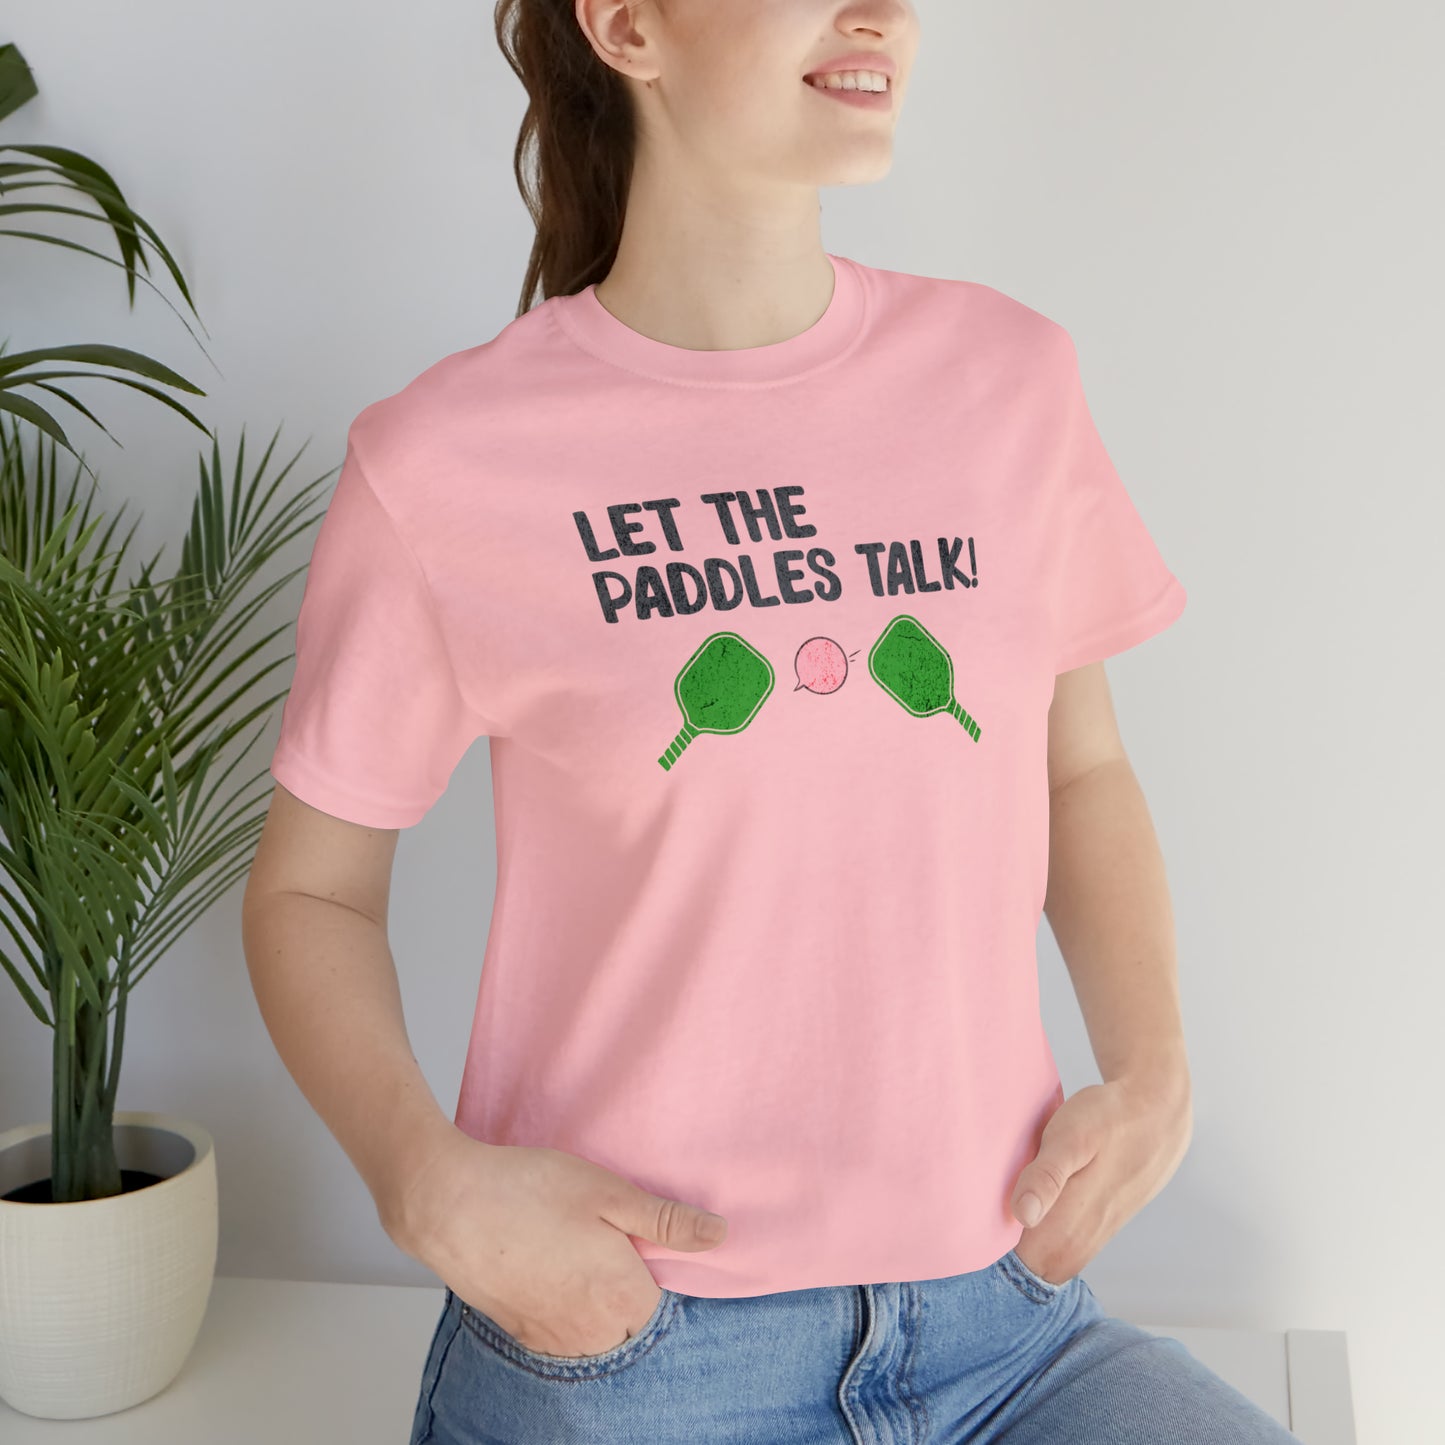 Let the Paddles Talk - Pickleball Noise T-Shirt